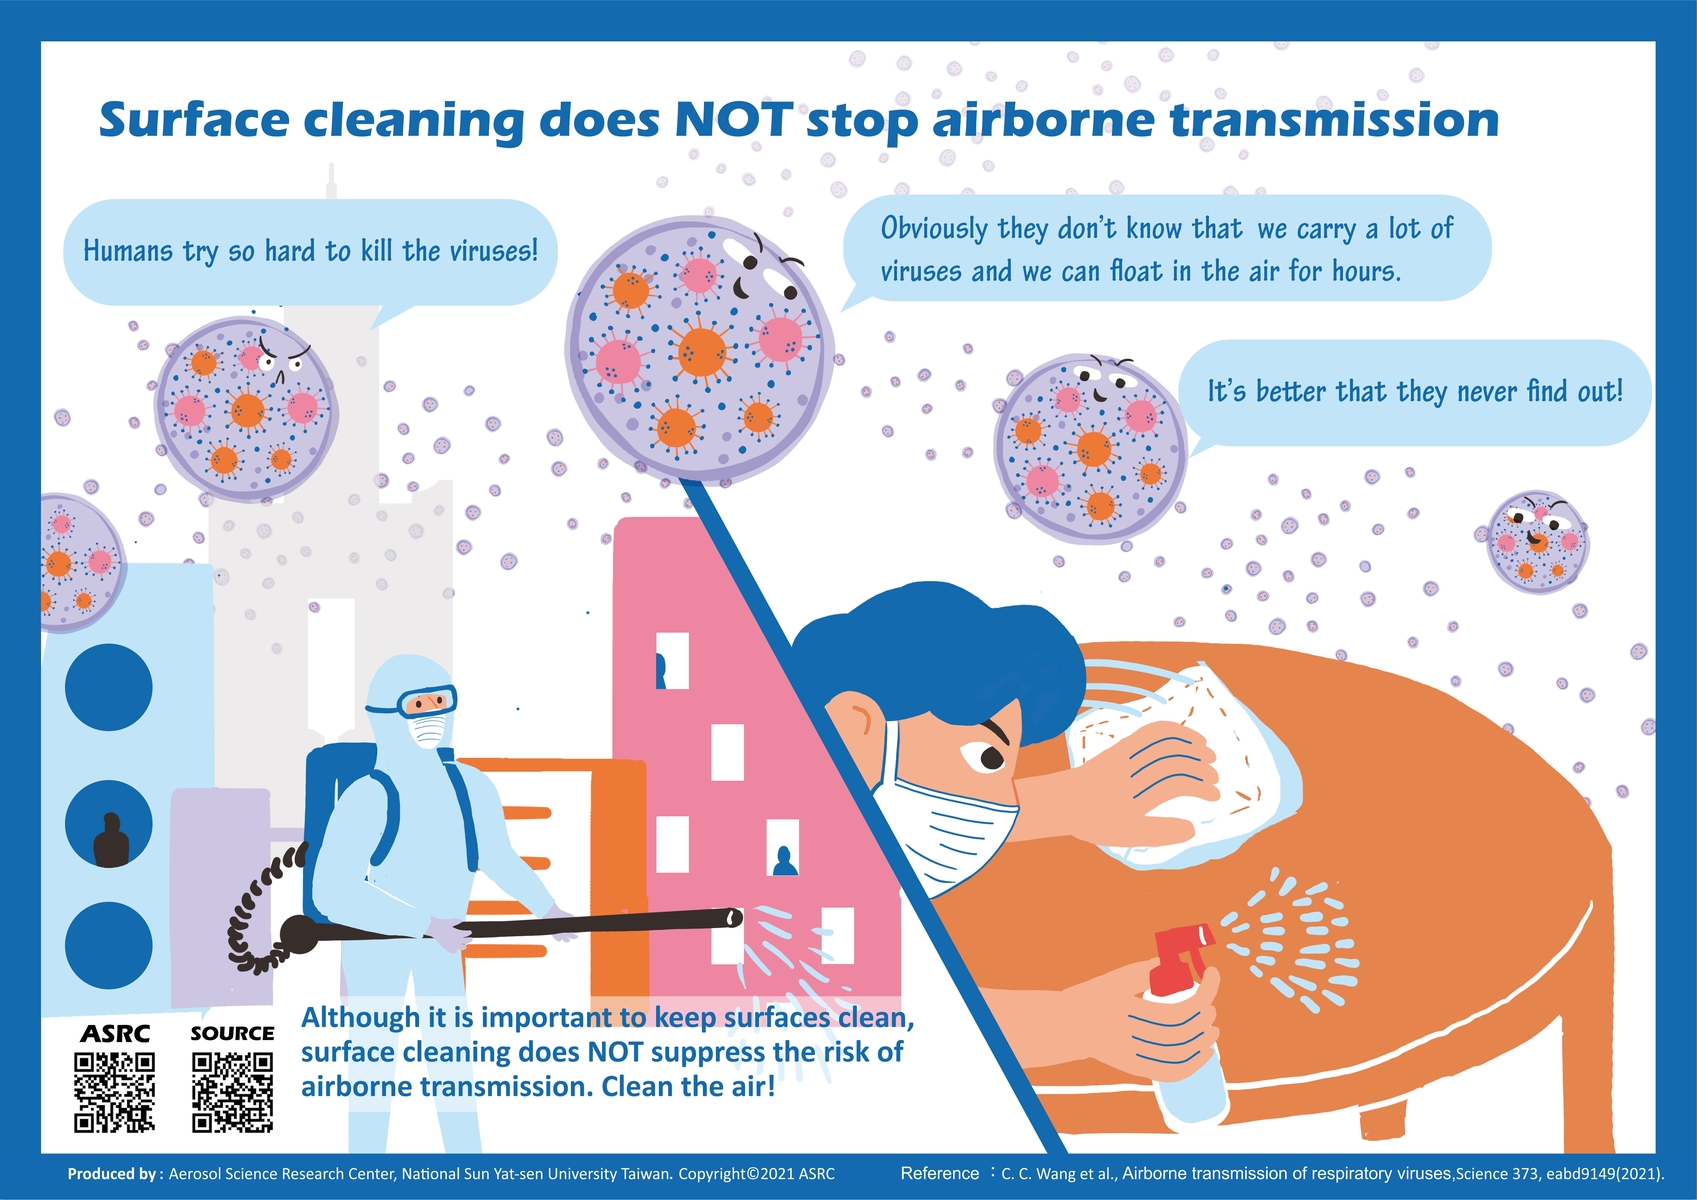 Aerosol Science Research Center’s explainer comics on virus-laden aerosols educate public on airborne transmission of viruses in 20 languages